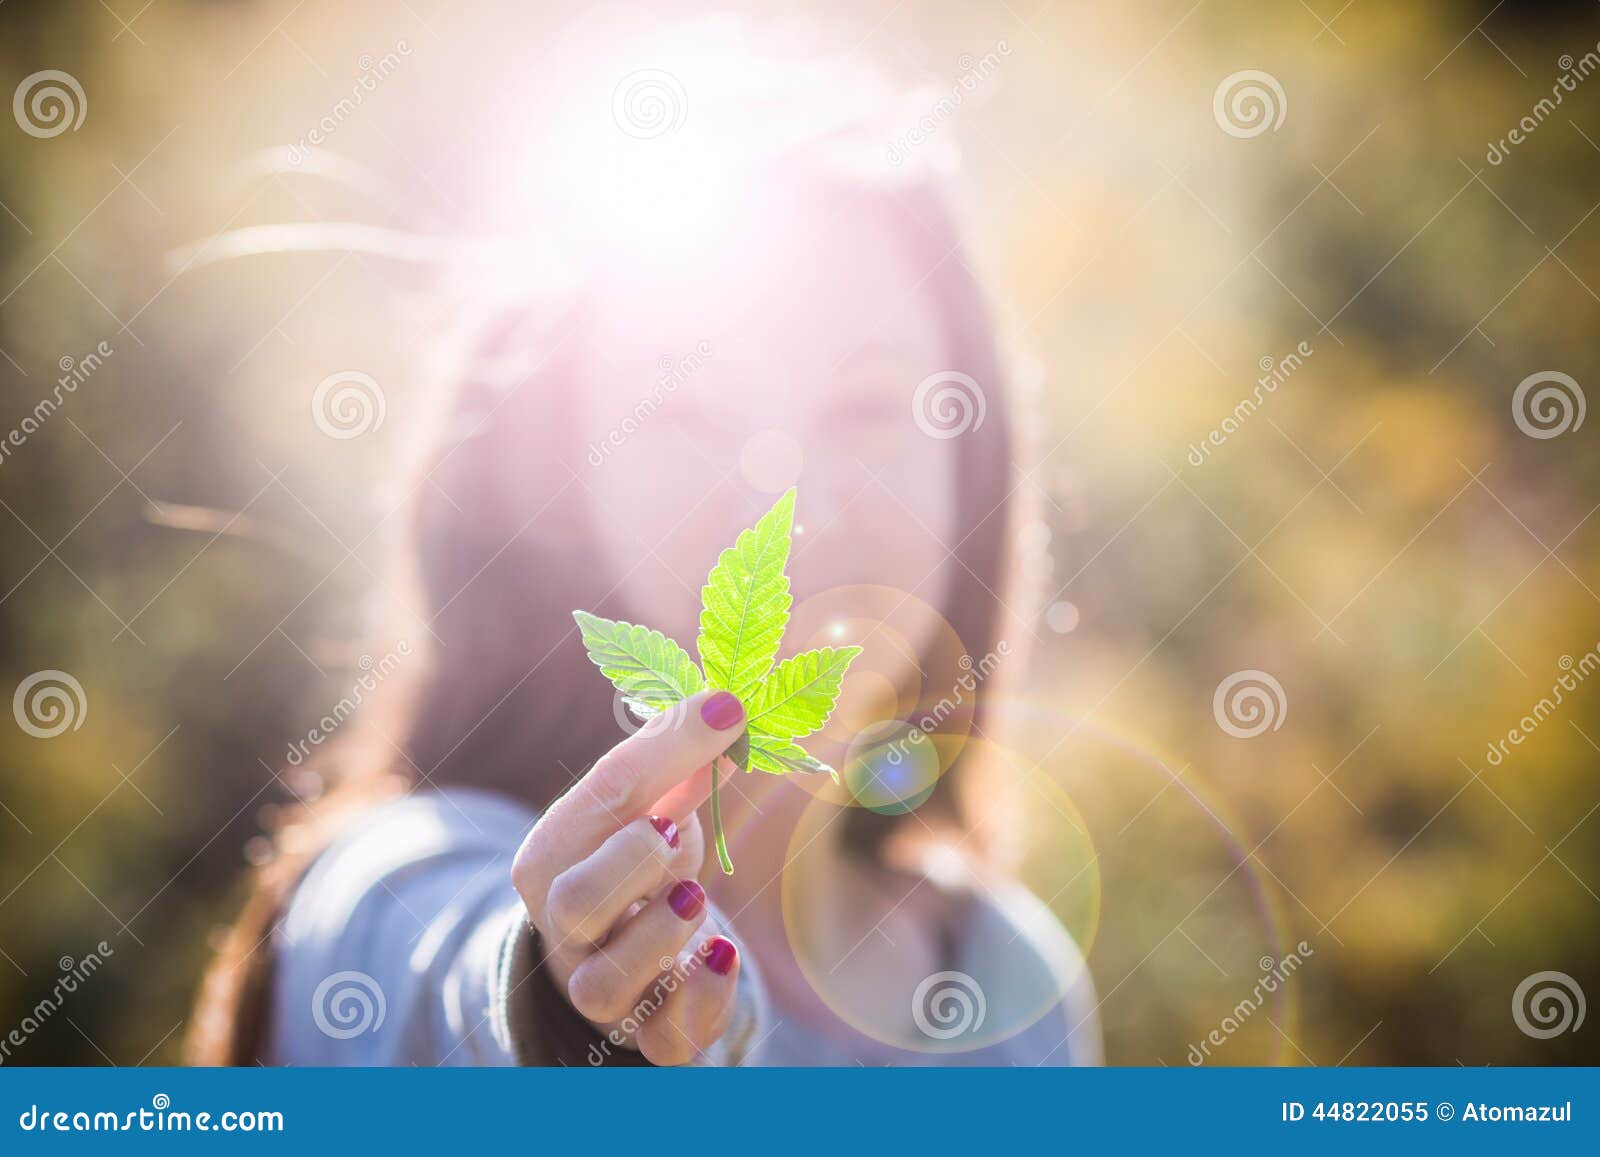 Картинки девушка с марихуаной скачать правильная ссылка на сайт гидра